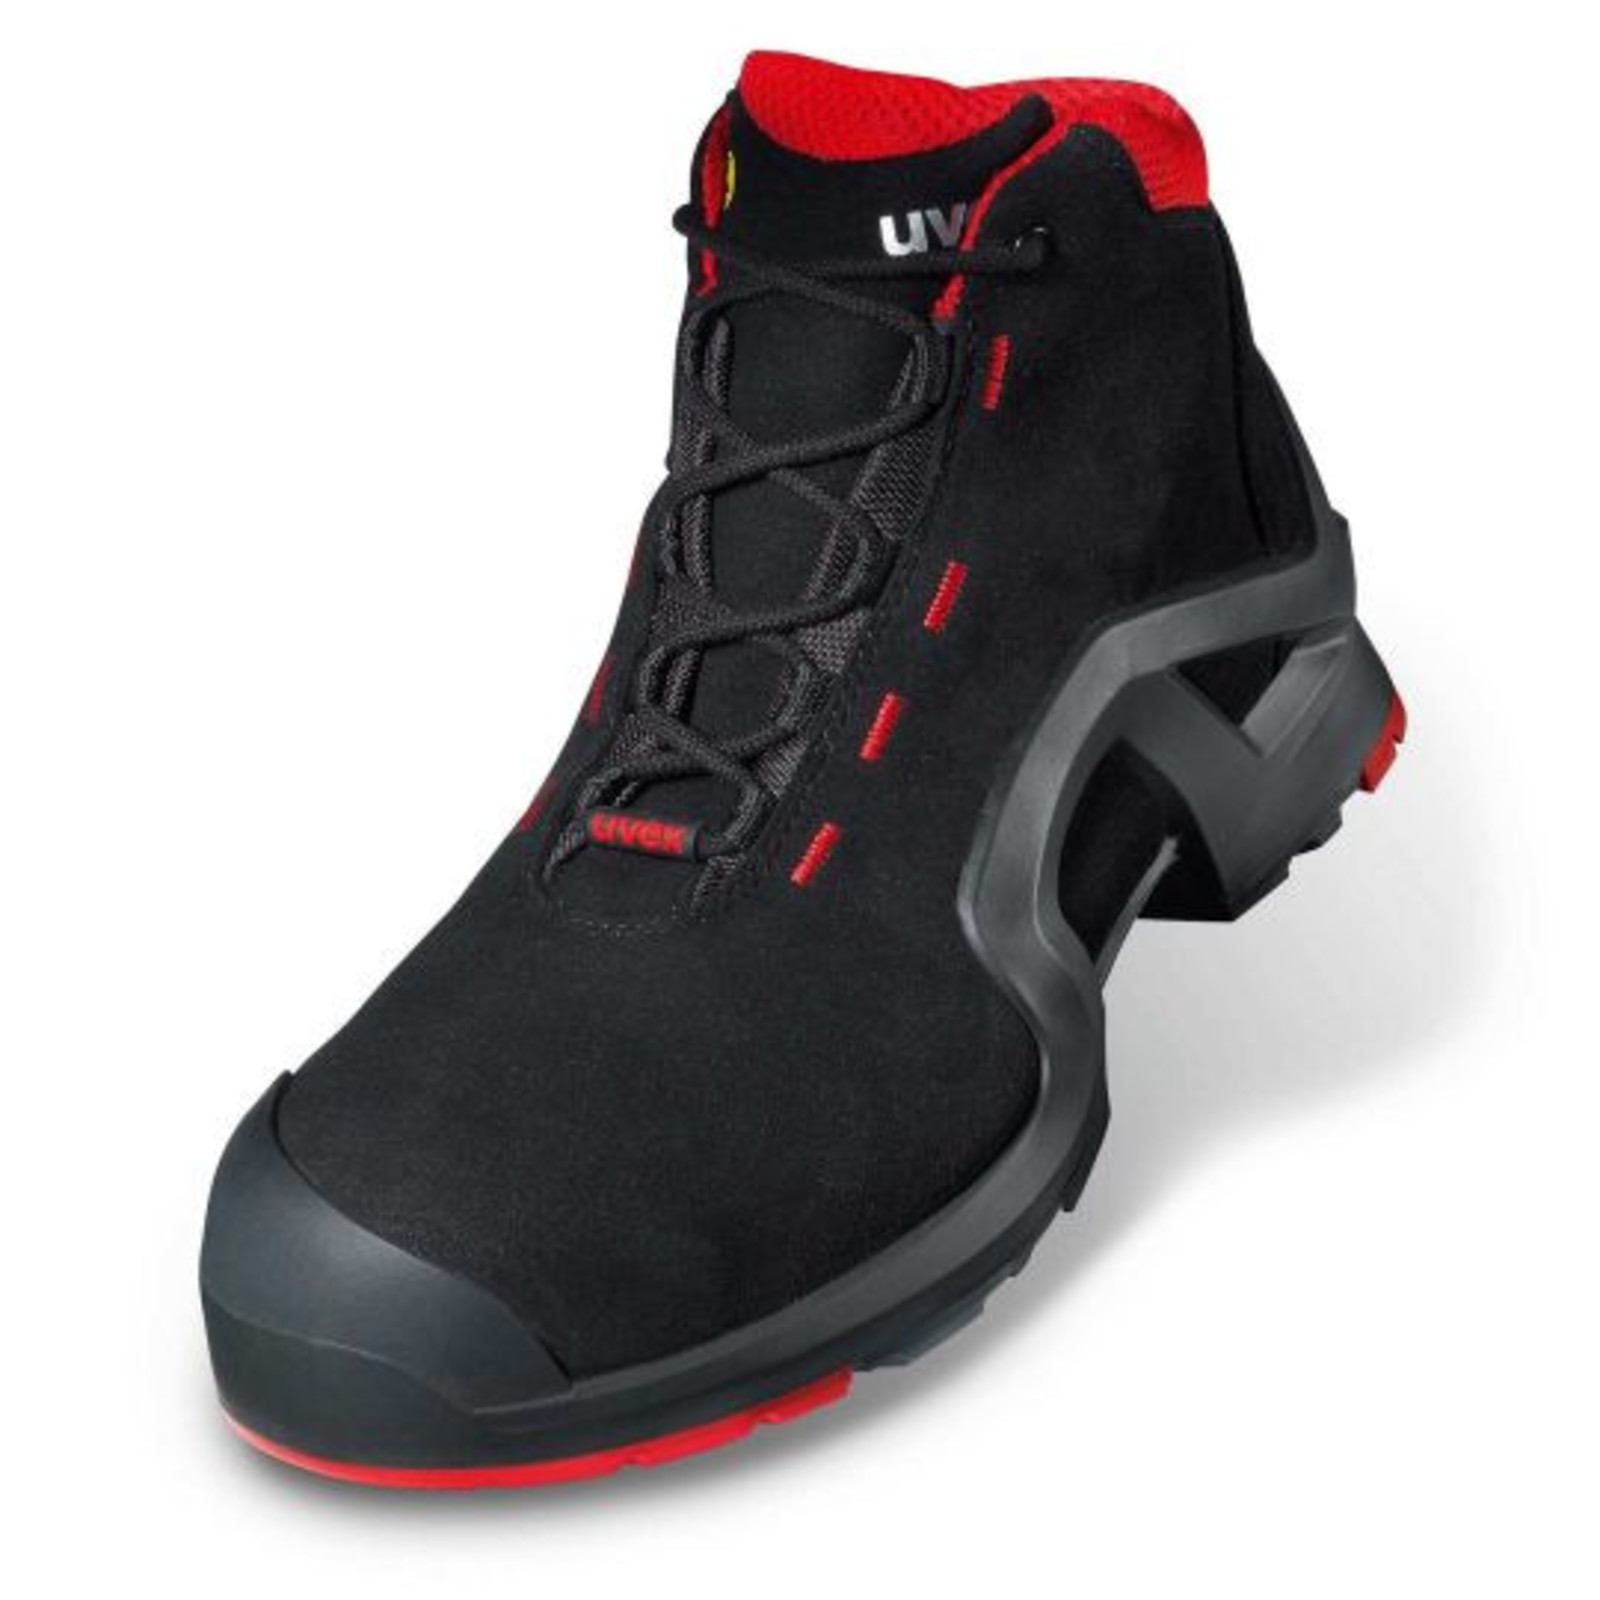 Vysoká bezpečnostná obuv Uvex 1 x-tended support S3 85172 - veľkosť: 43, farba: čierna/červená